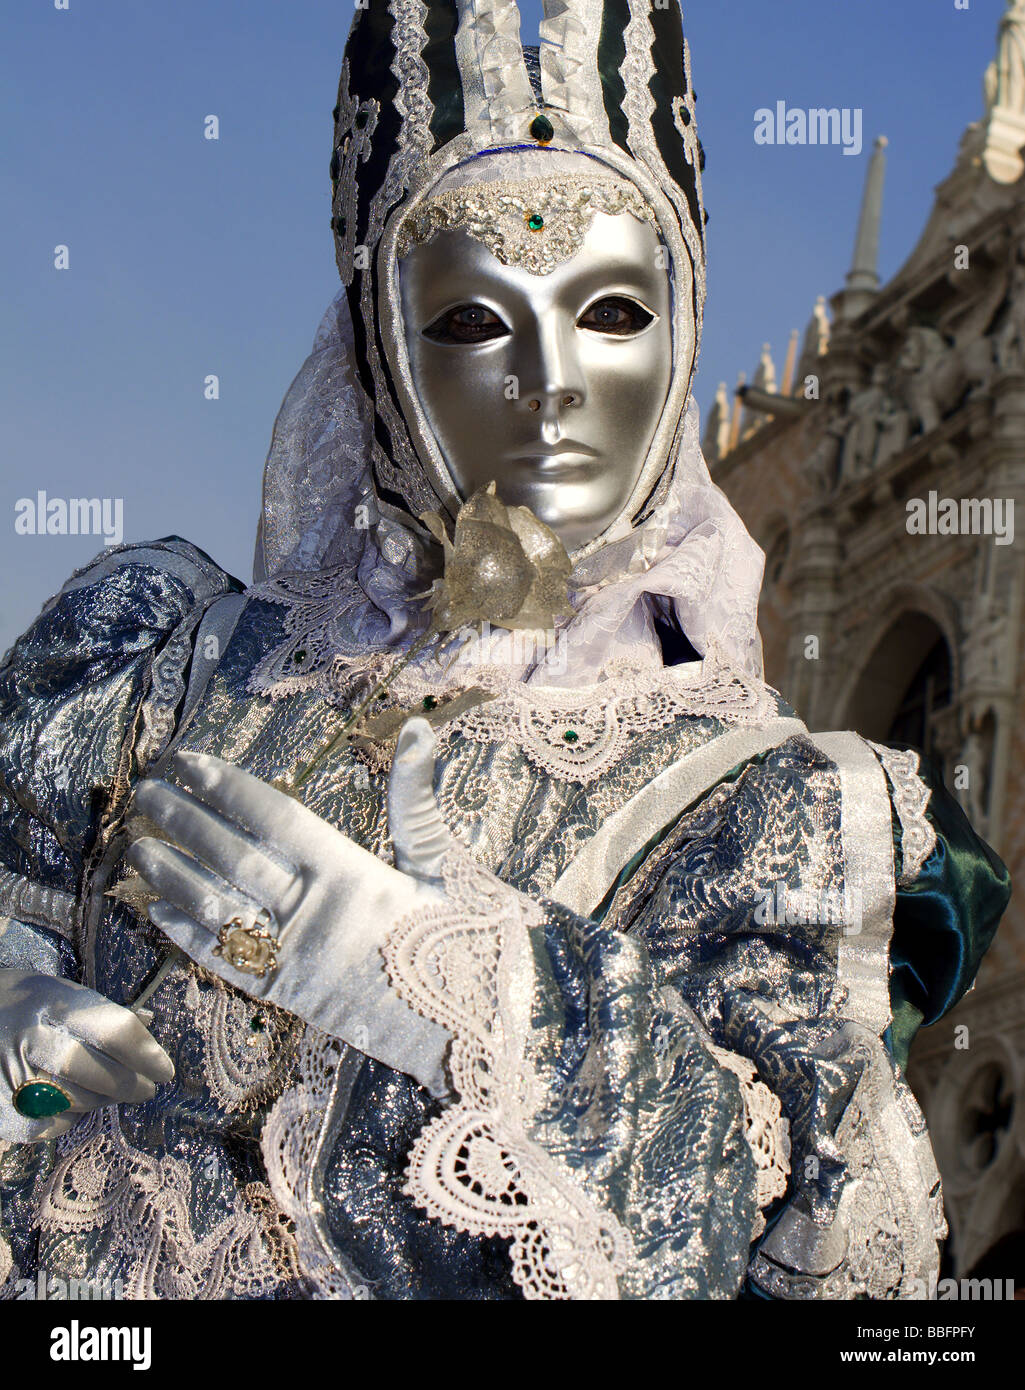 Un masque de carnaval de Venise - argent Banque D'Images